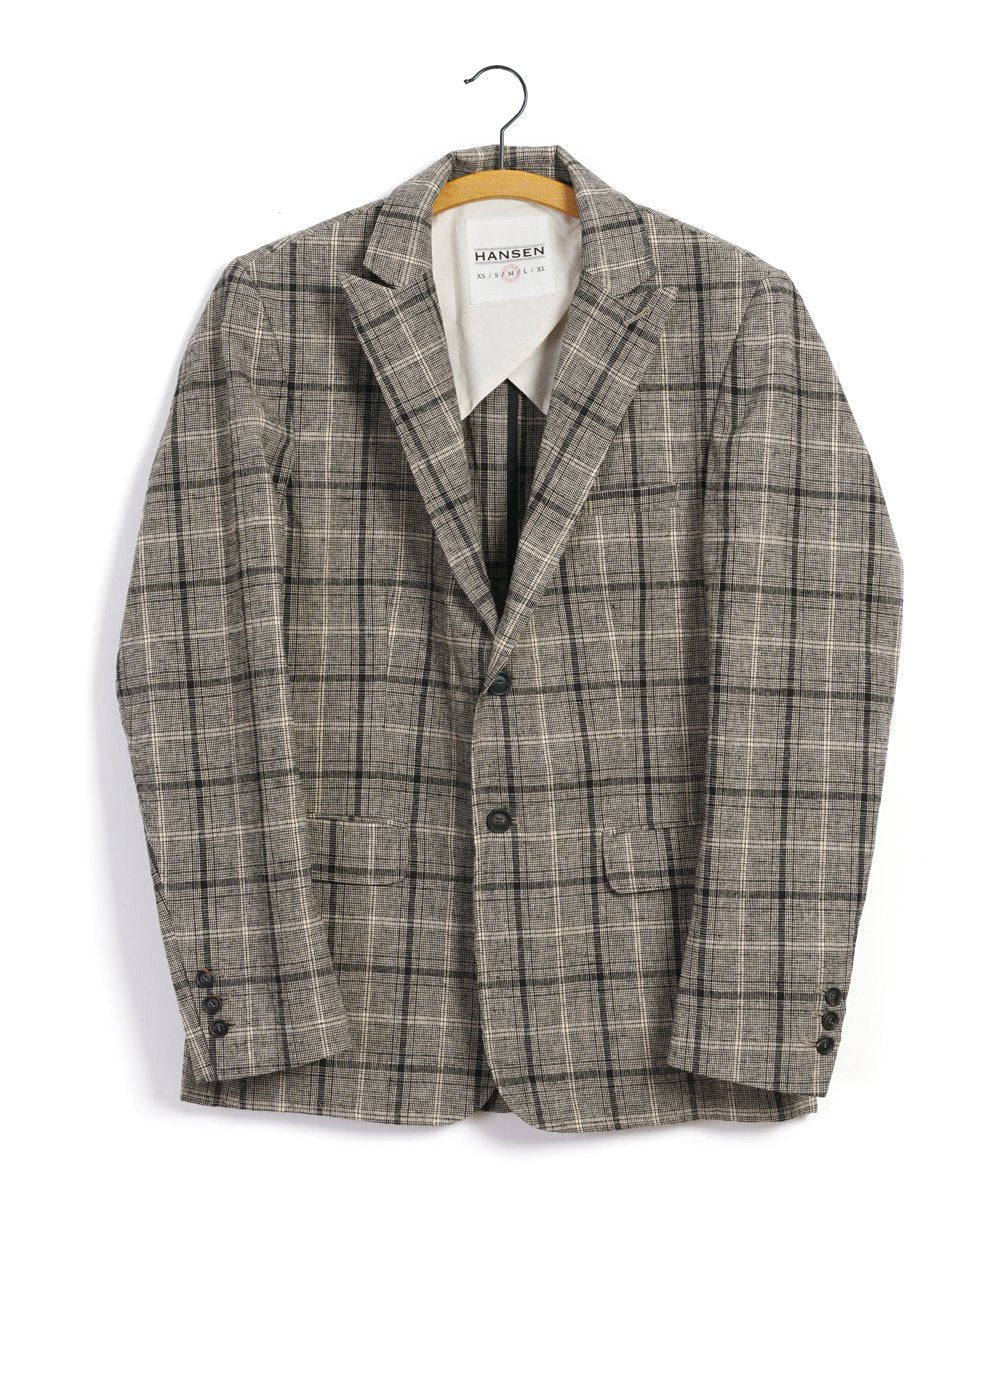 HANSEN GARMENTS - CHRISTOFFER | Two Button Blazer | Check 1 - HANSEN Garments